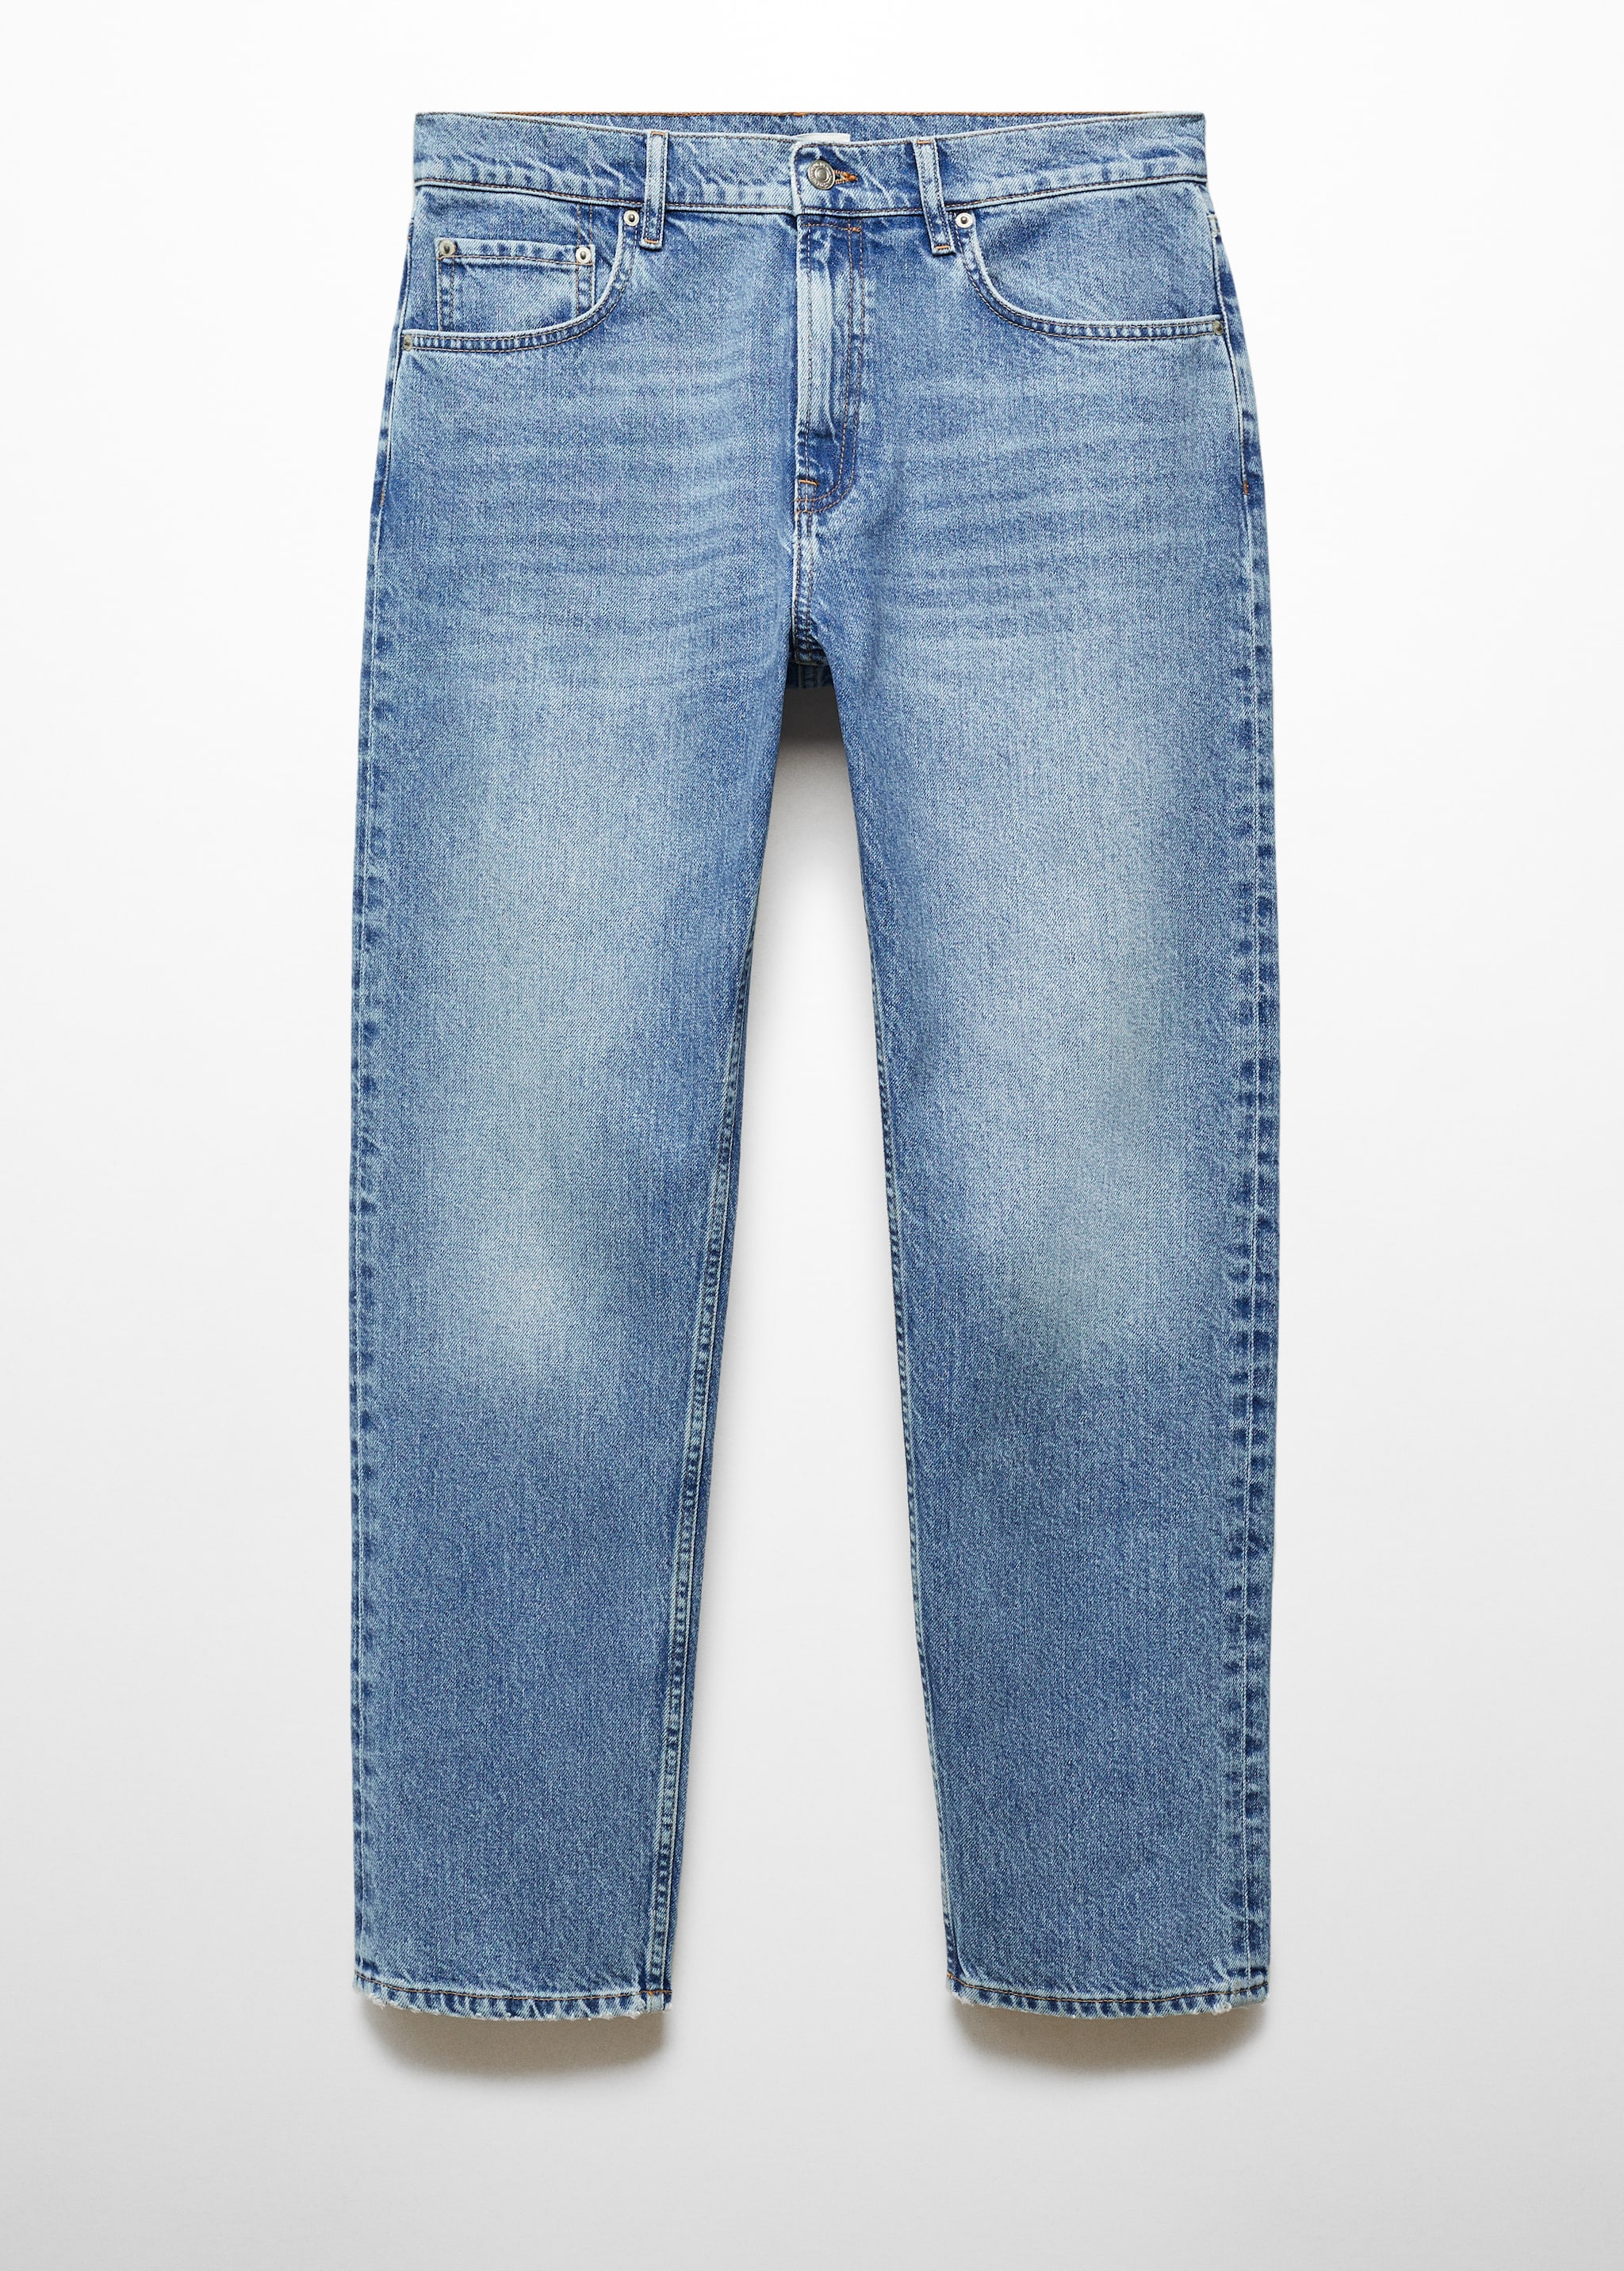 Jeans regular-fit lavaggio medio - Articolo senza modello